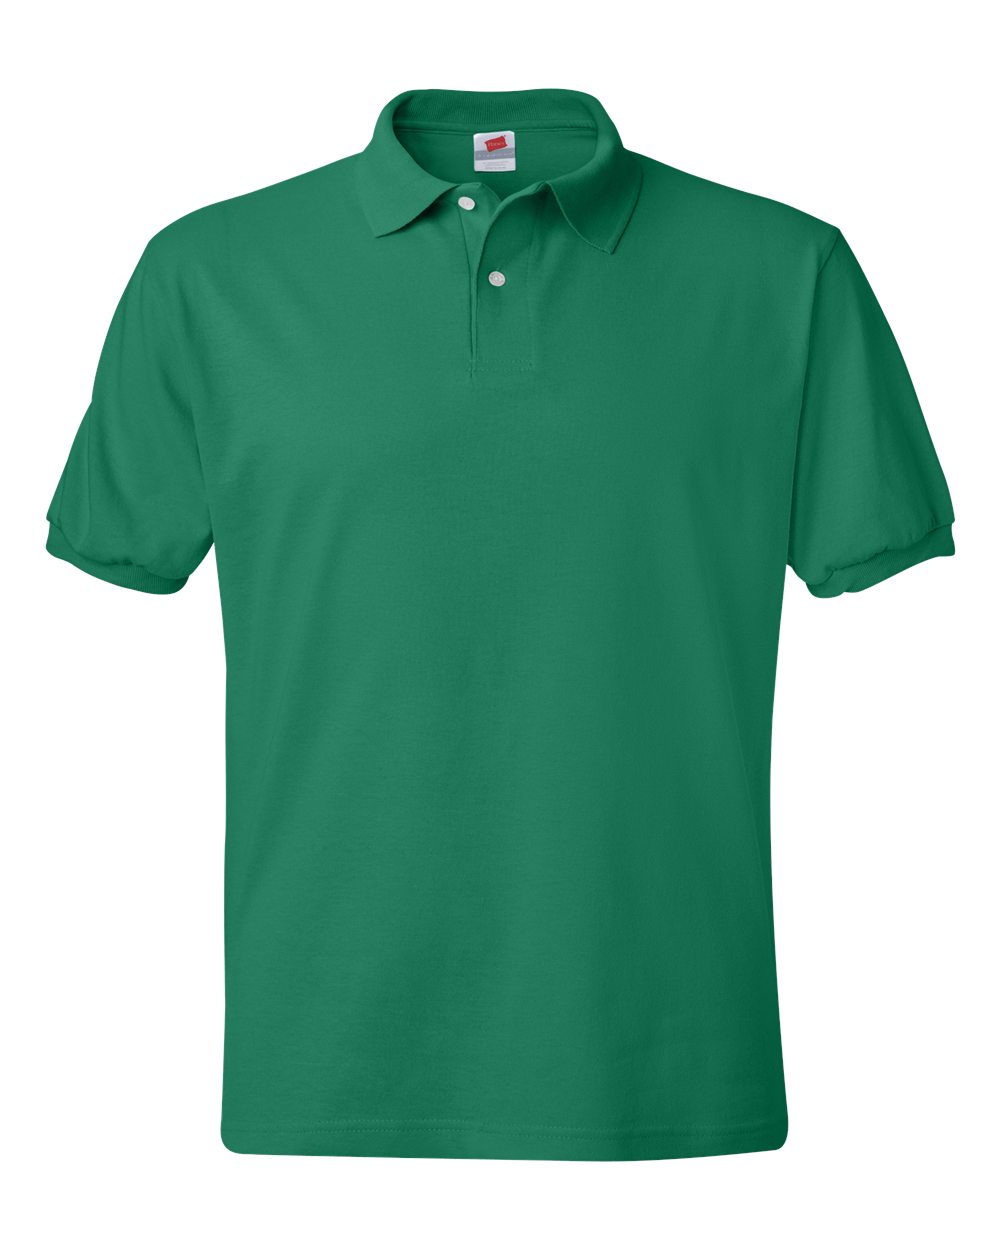 Hanes 054X - Ecosmart Jersey Sport Shirt